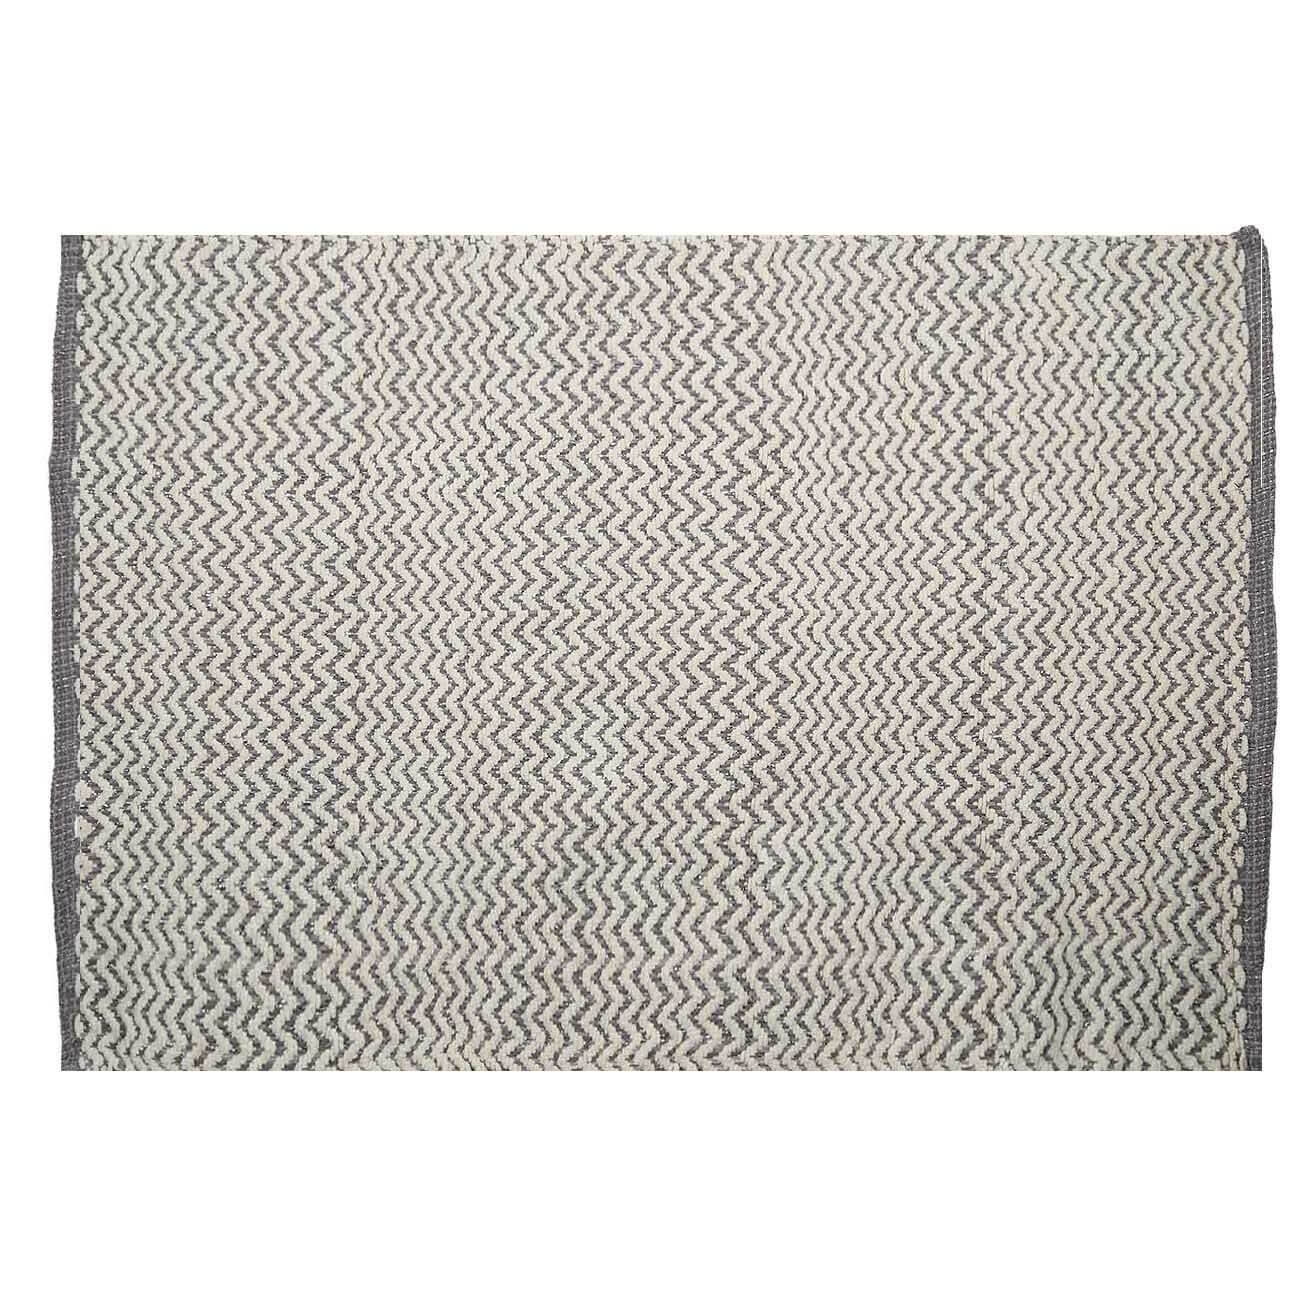 Коврик, 65х100 см, хлопок, бело-серый, Зигзаги с люрексом, Shiny threads коврик антипригарный для кексов прямоугольный nostik